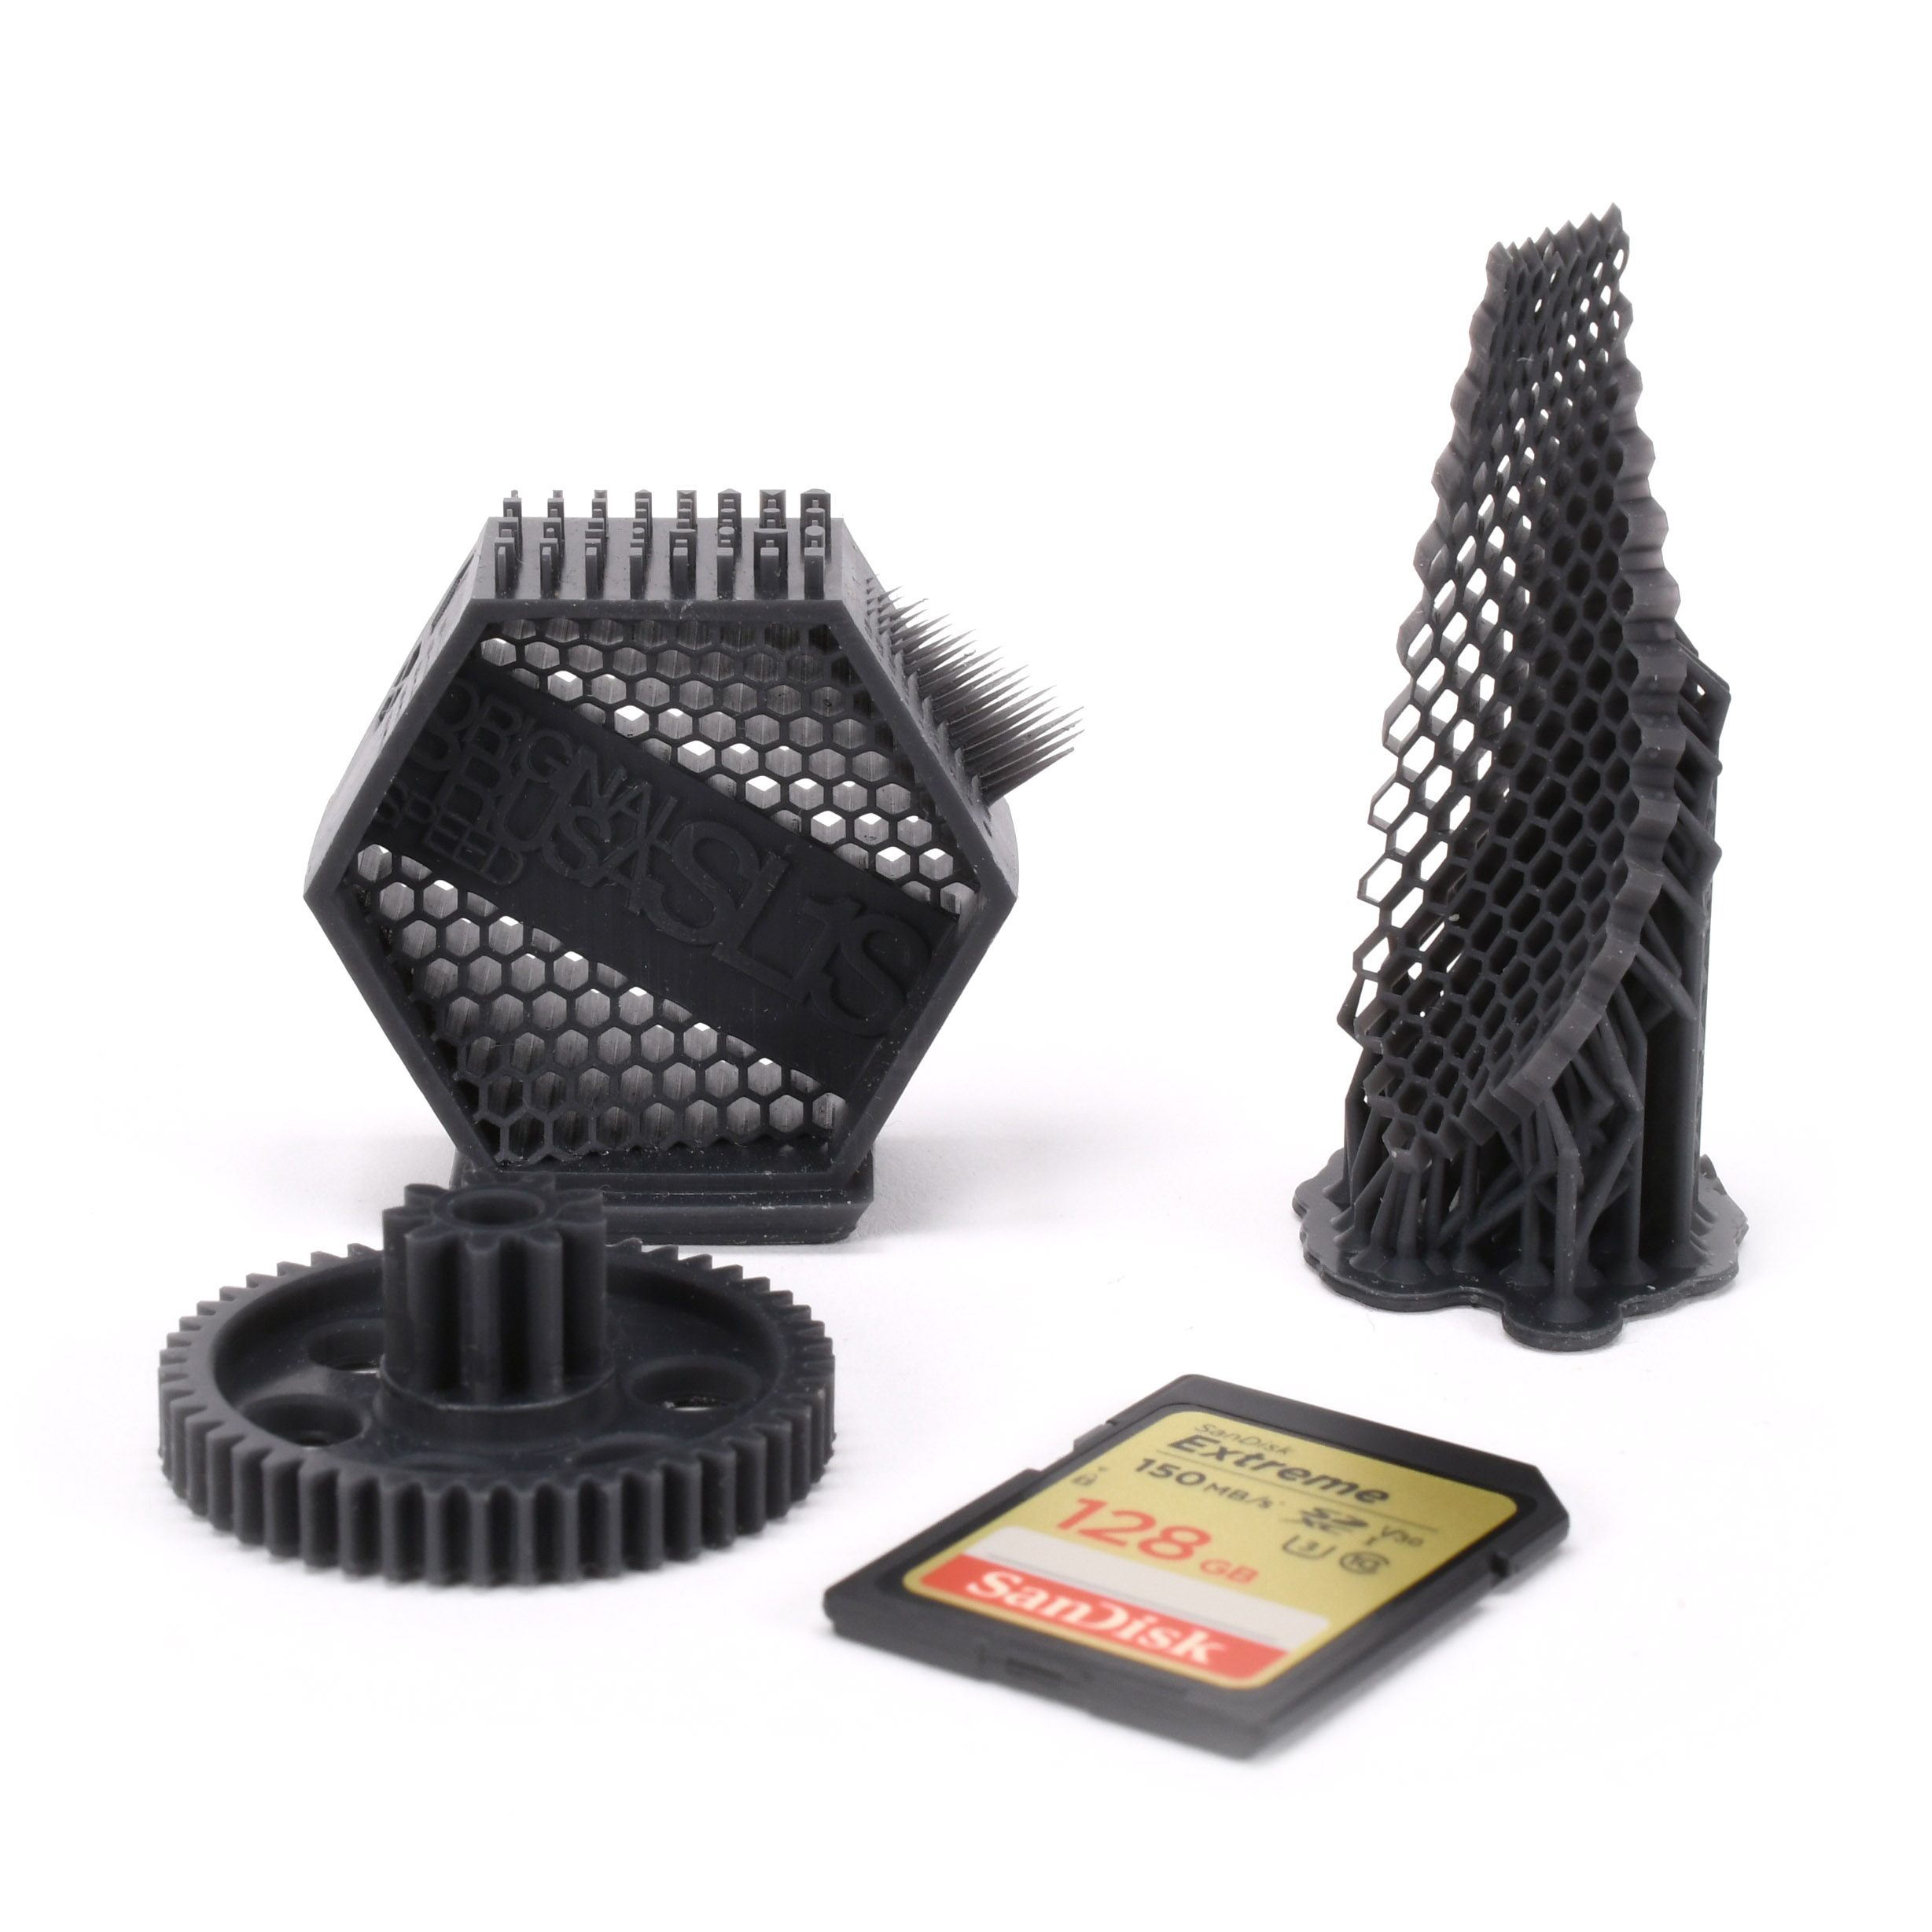 Achat d'une nouvelle Imprimante 3D SLA Résine - Provence Engineering